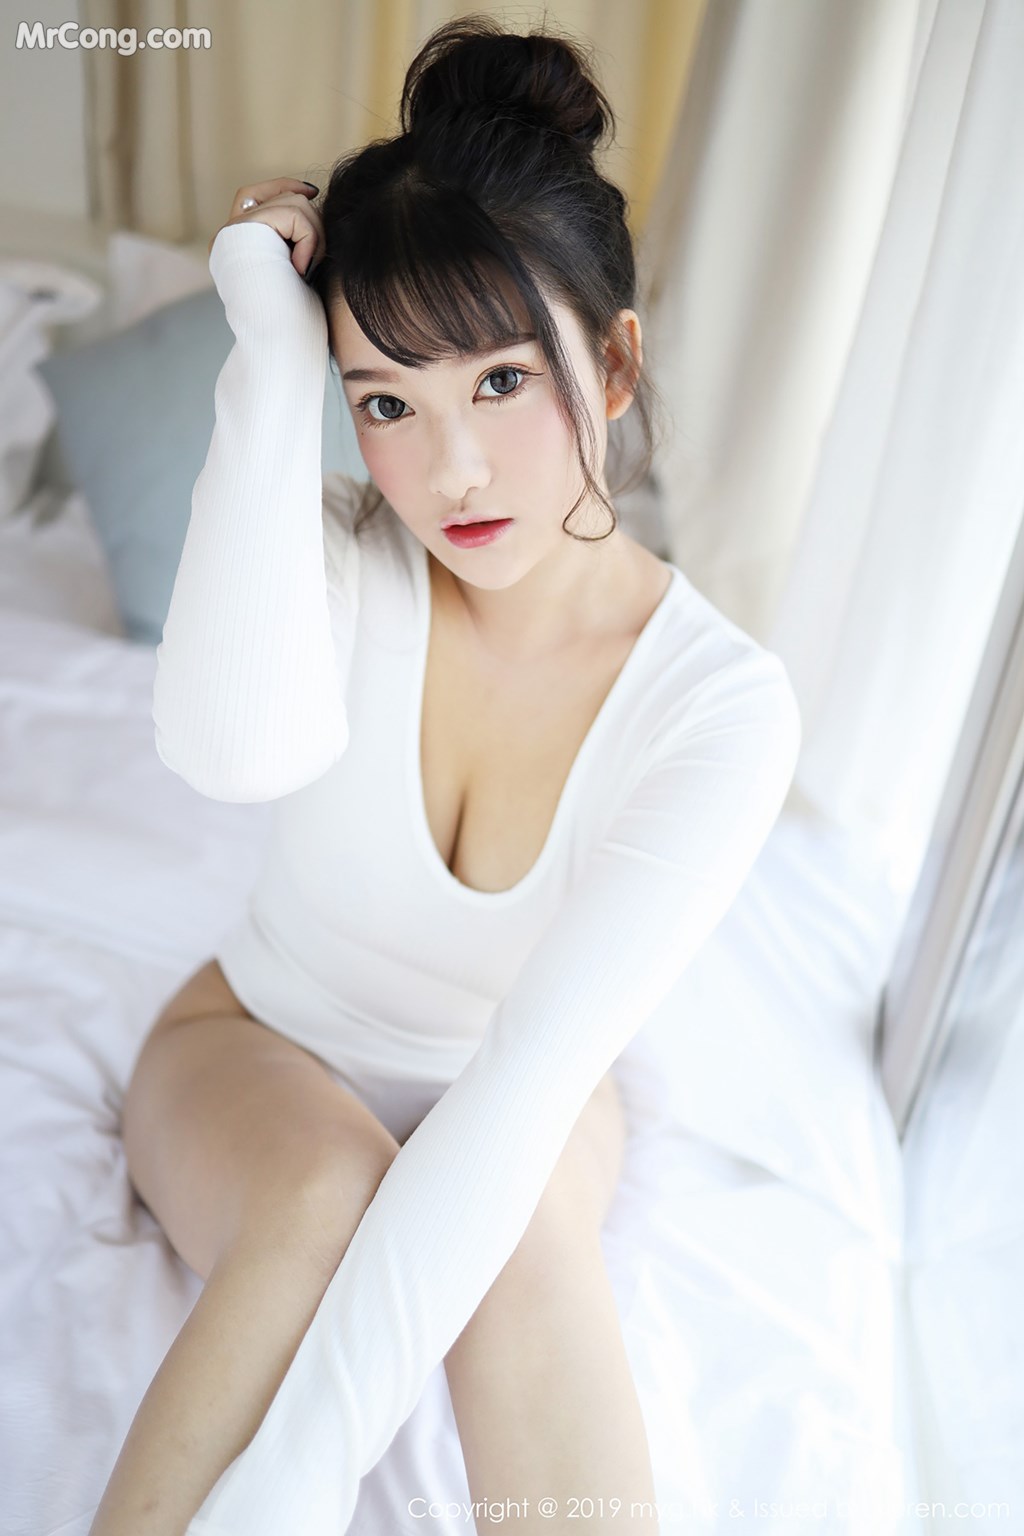 MyGirl Vol.342: Model Xiao You Nai (小 尤奈) (41 photos)